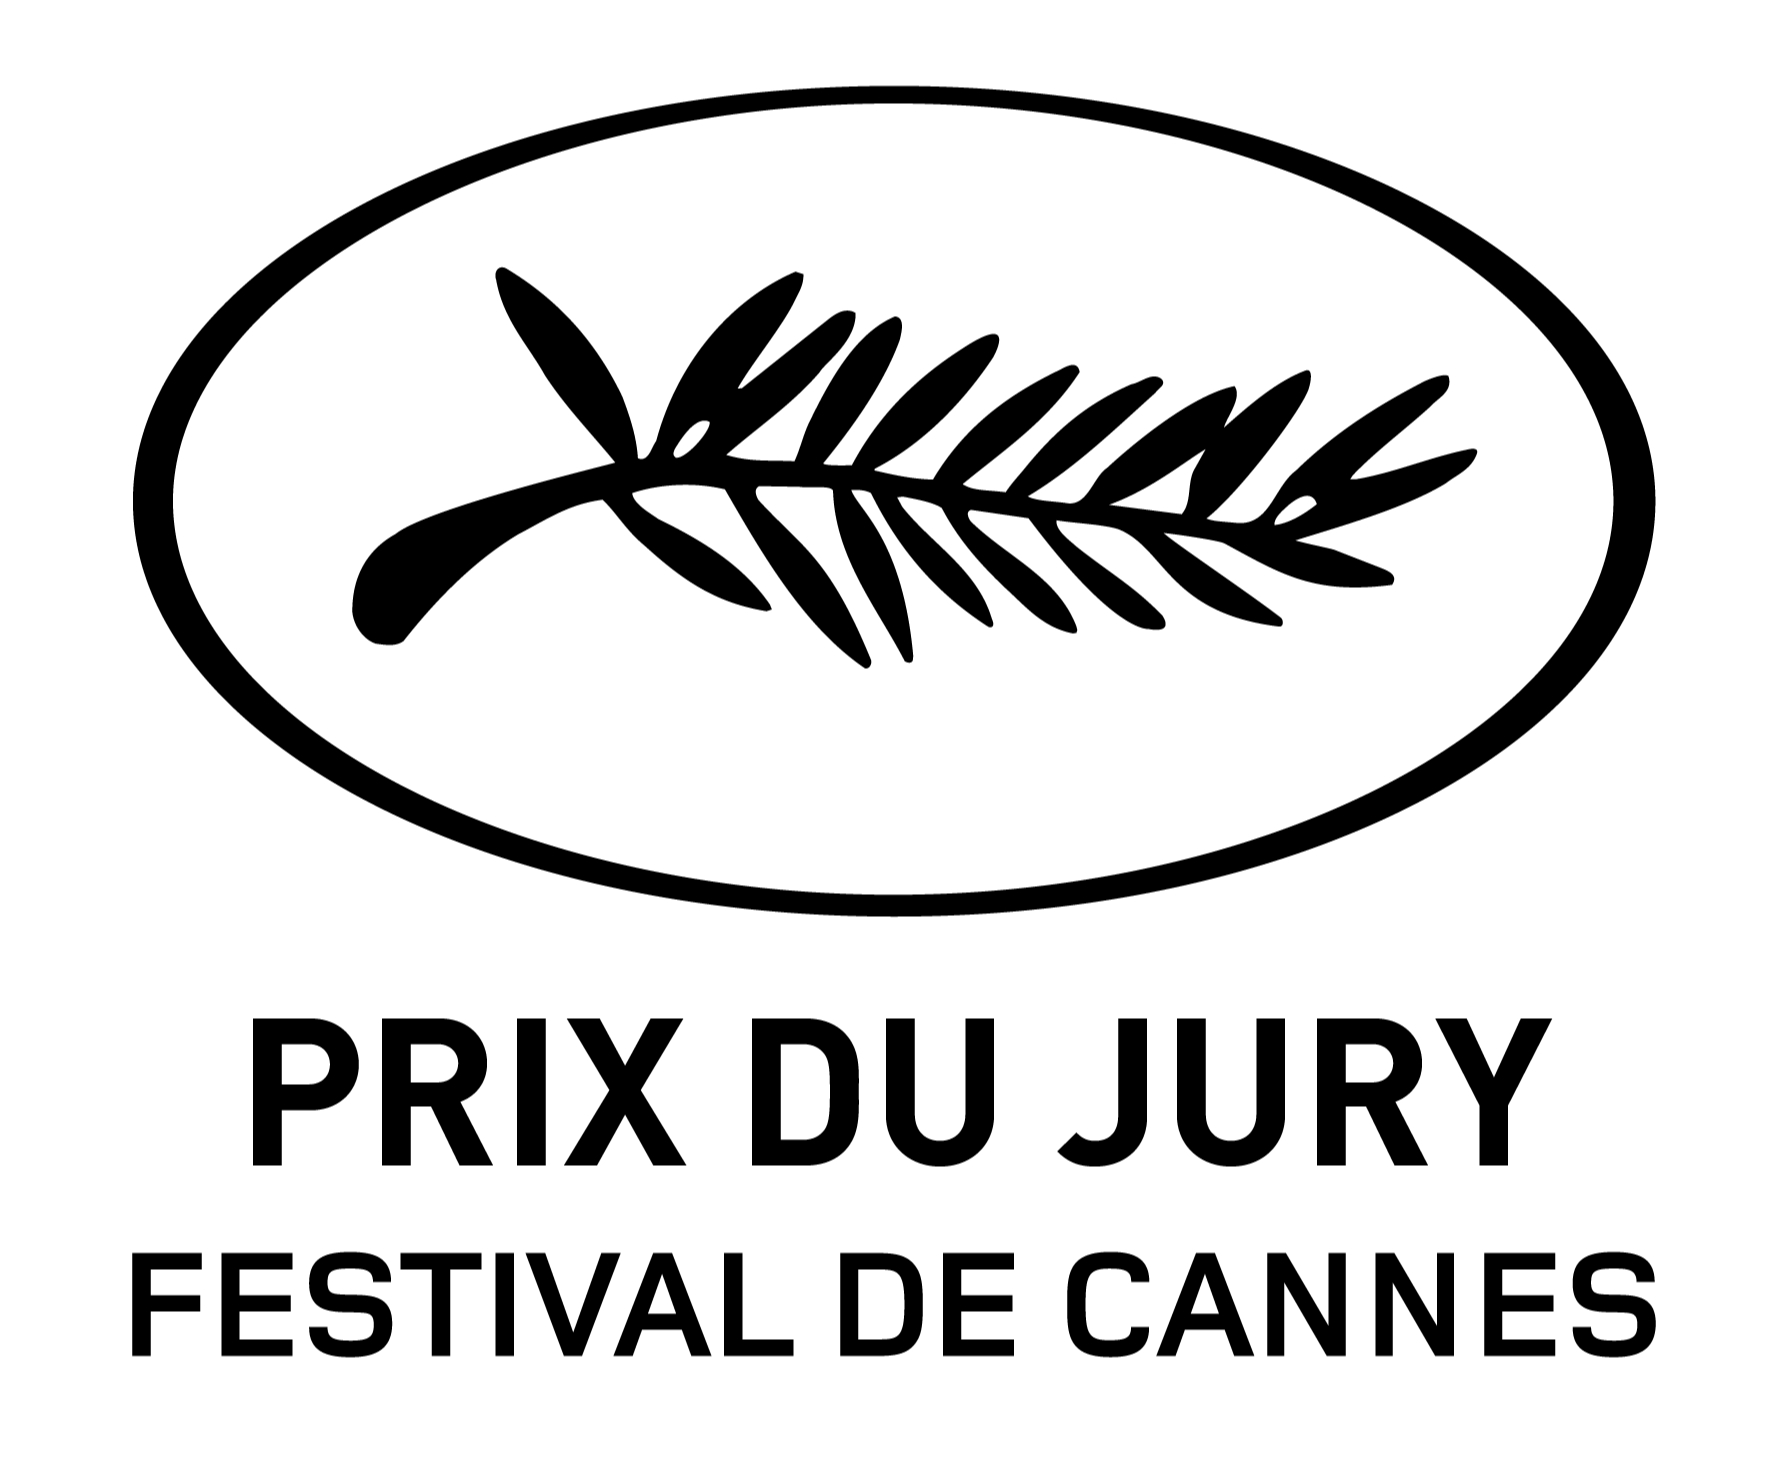 Festival de Cannes - Prix du jury